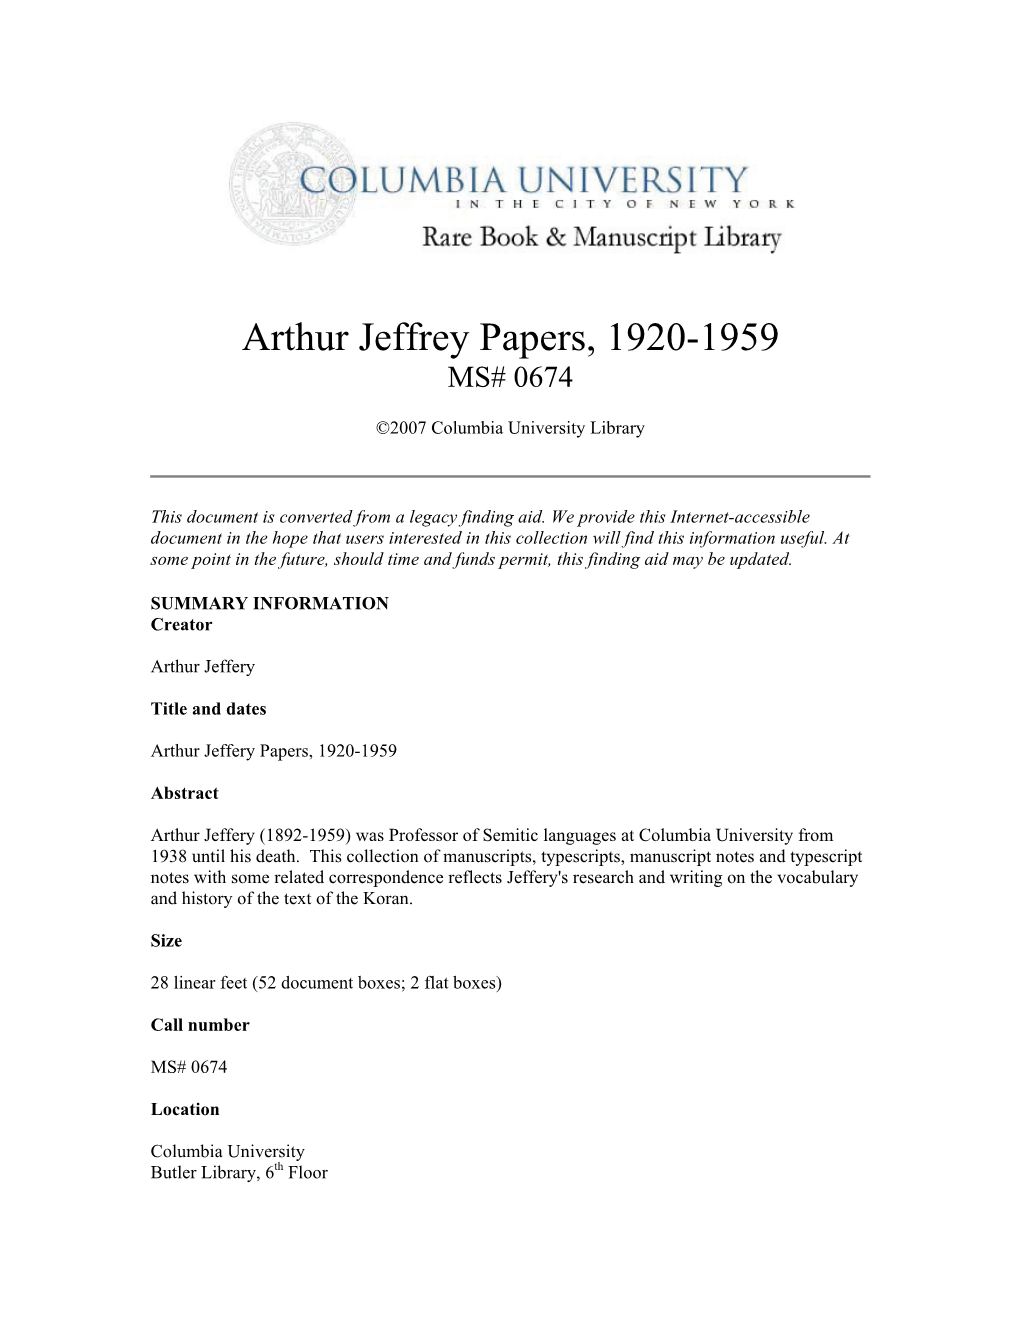 Arthur Jeffrey Papers, 1920-1959 MS# 0674